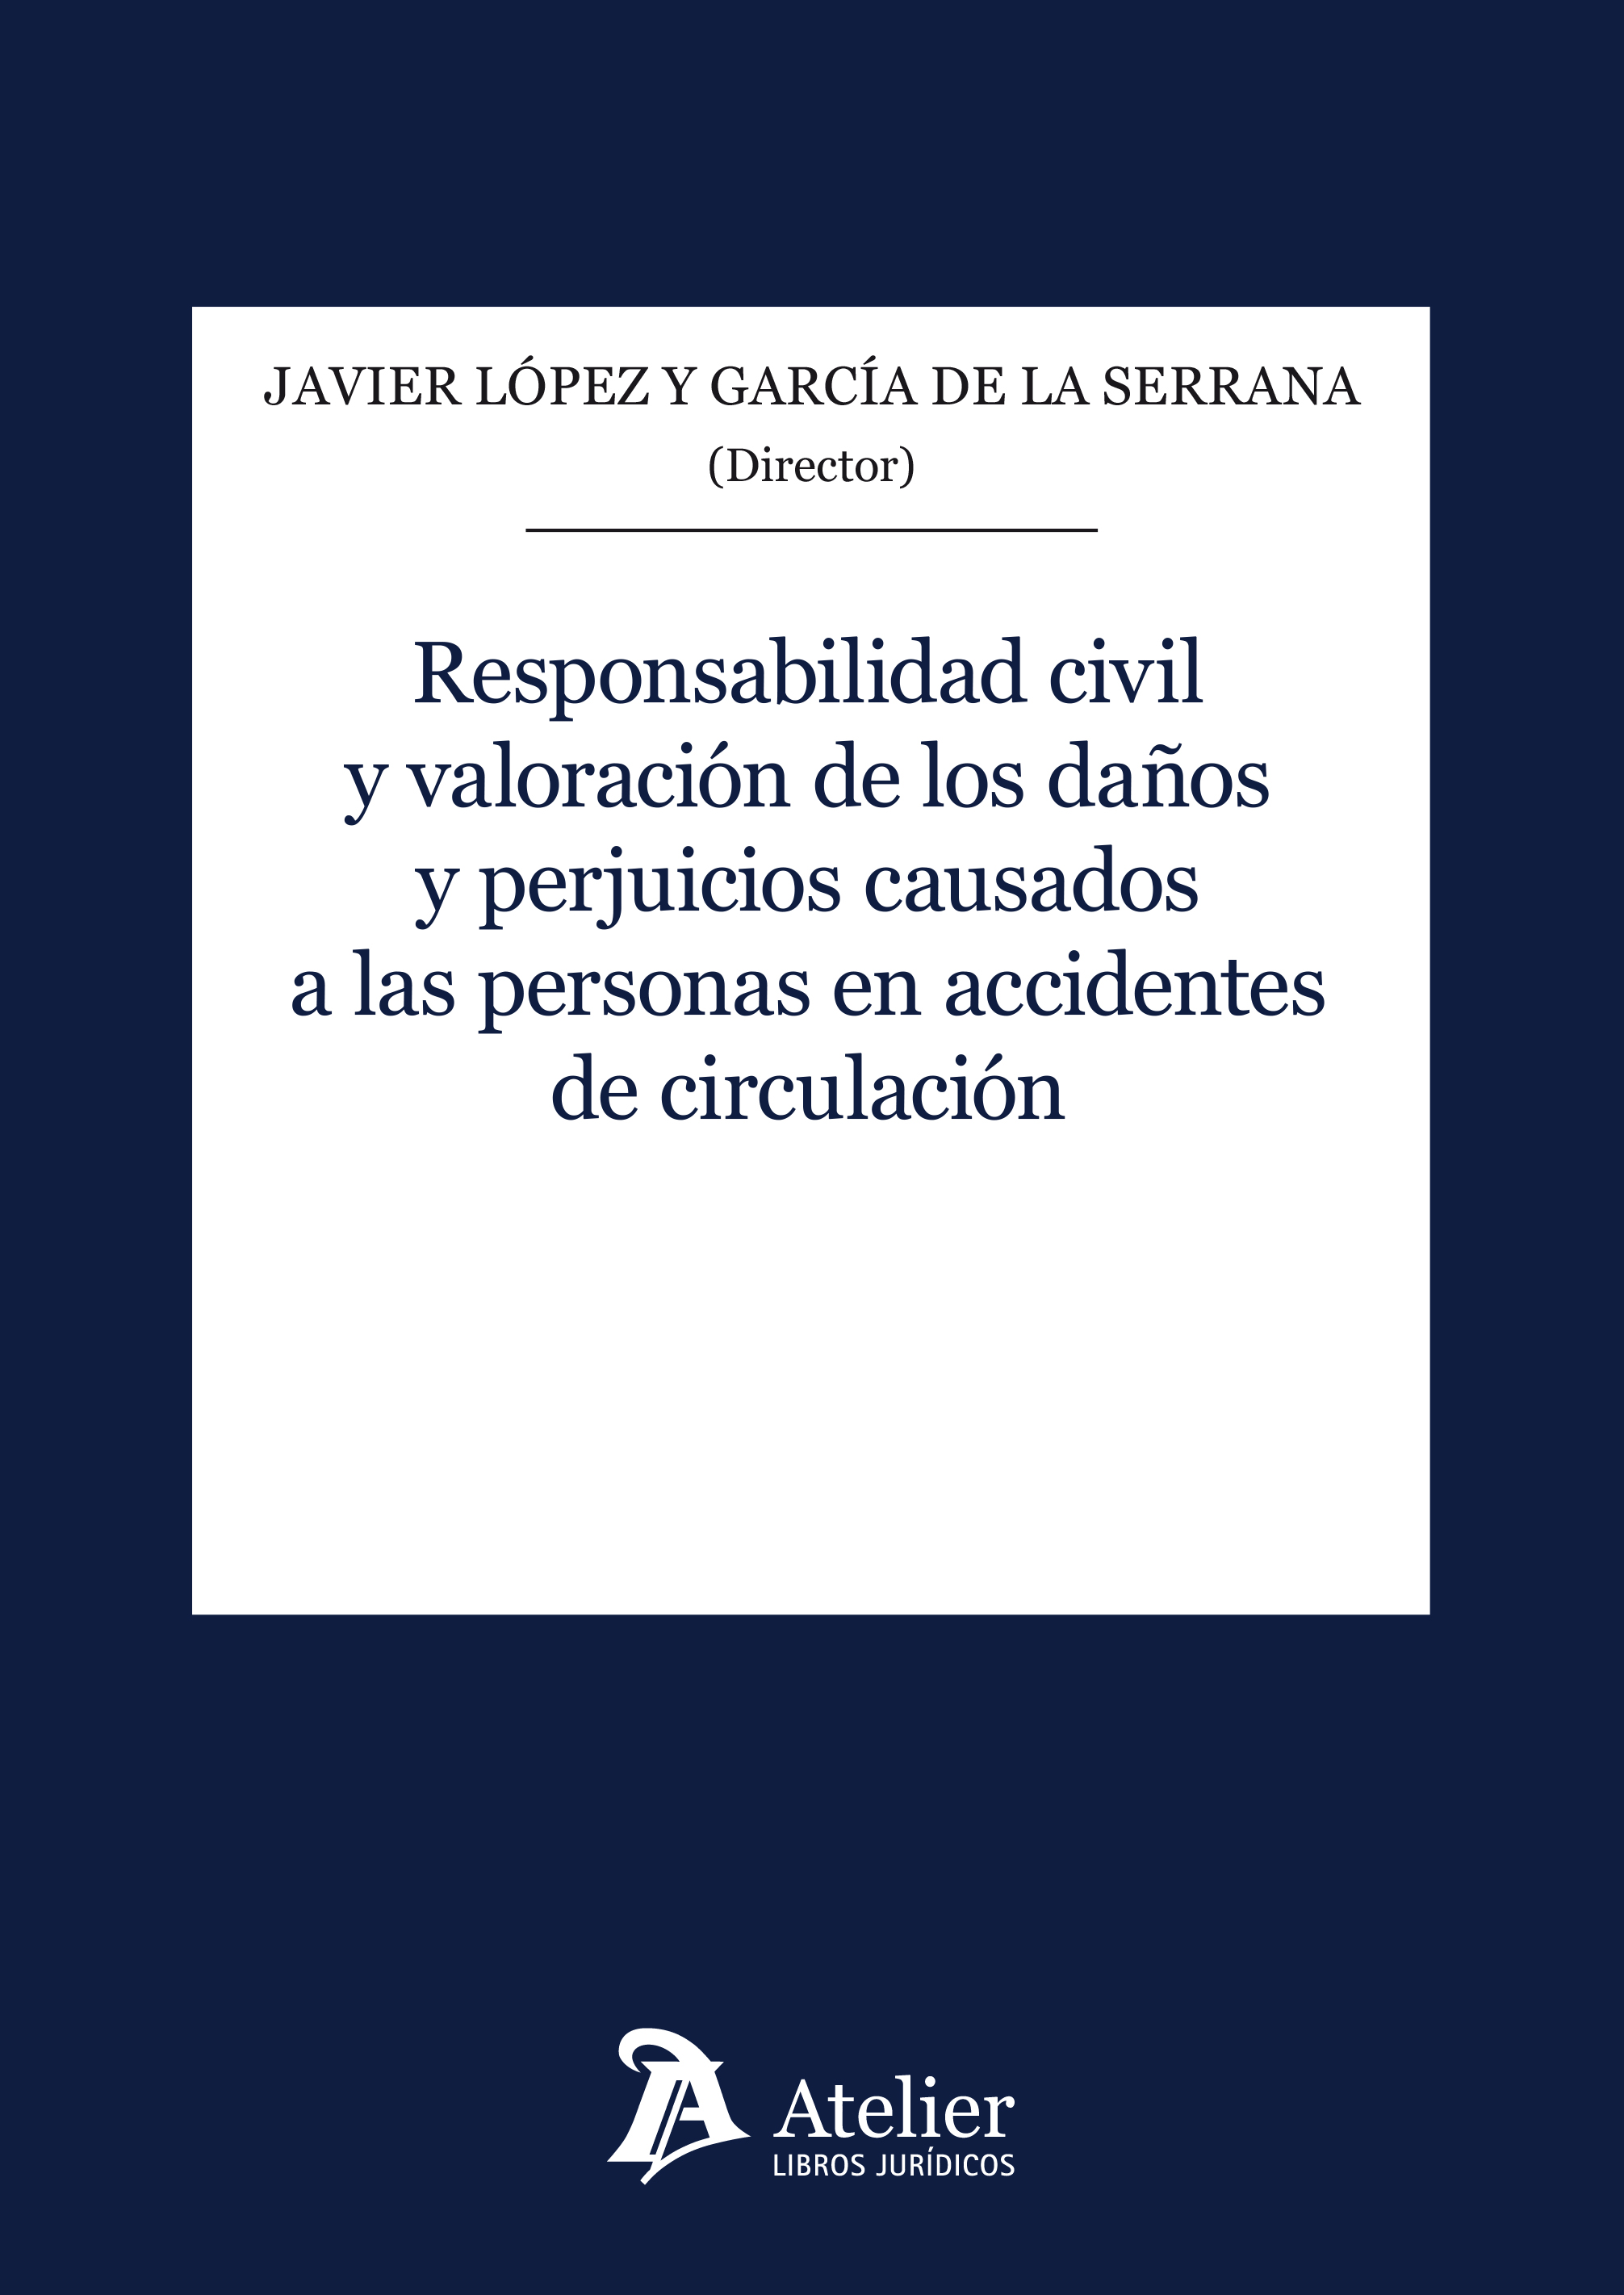 Imagen de portada del libro Responsabilidad civil y valoración de los daños y perjuicios causados a las personas en accidentes de circulación